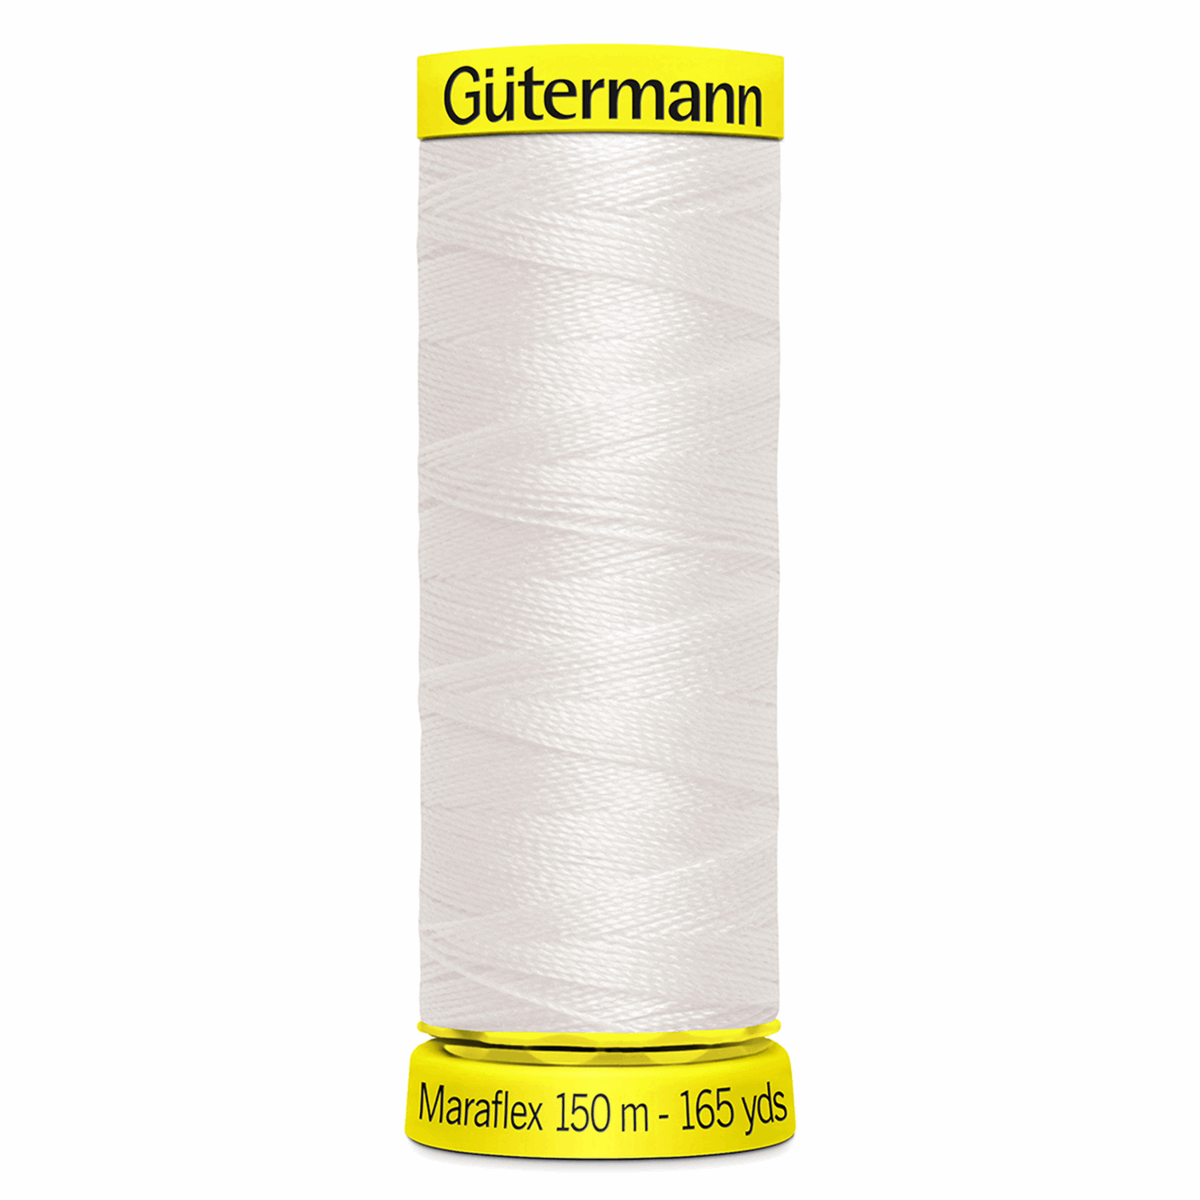 Gutermann Maraflex Elastic Sewing Thread 150m Ivory 111